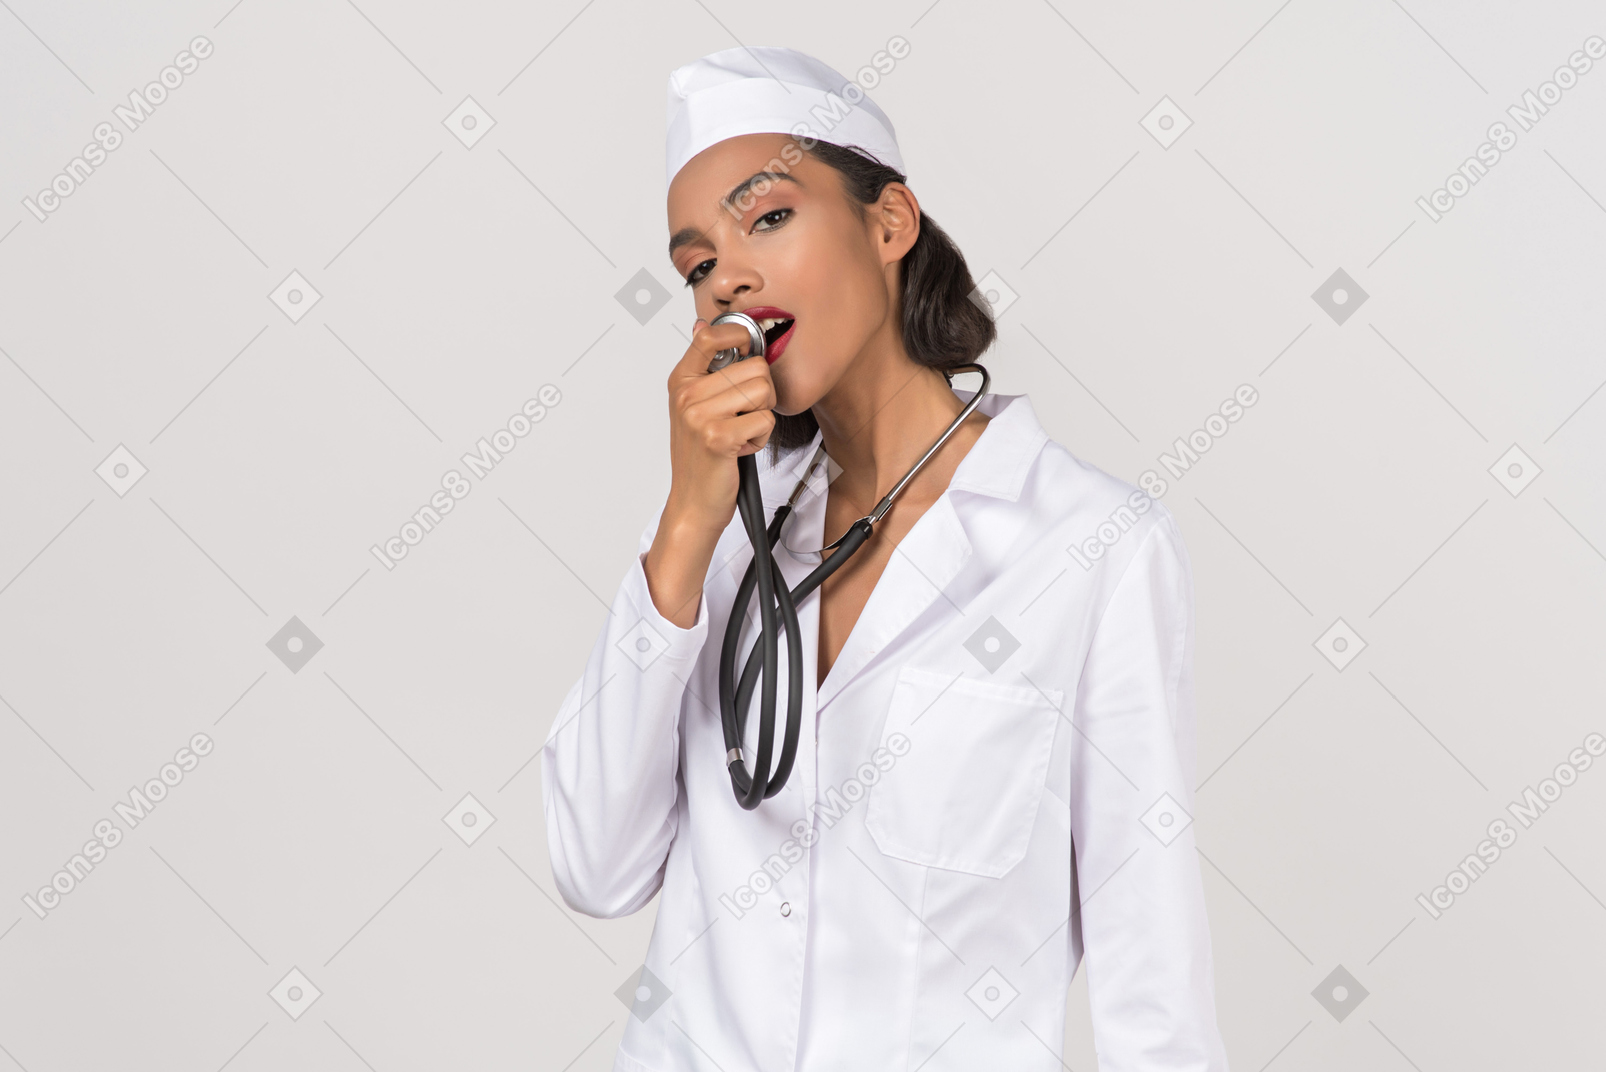 Привлекательная молодая женщина-врач держит стетоскоп